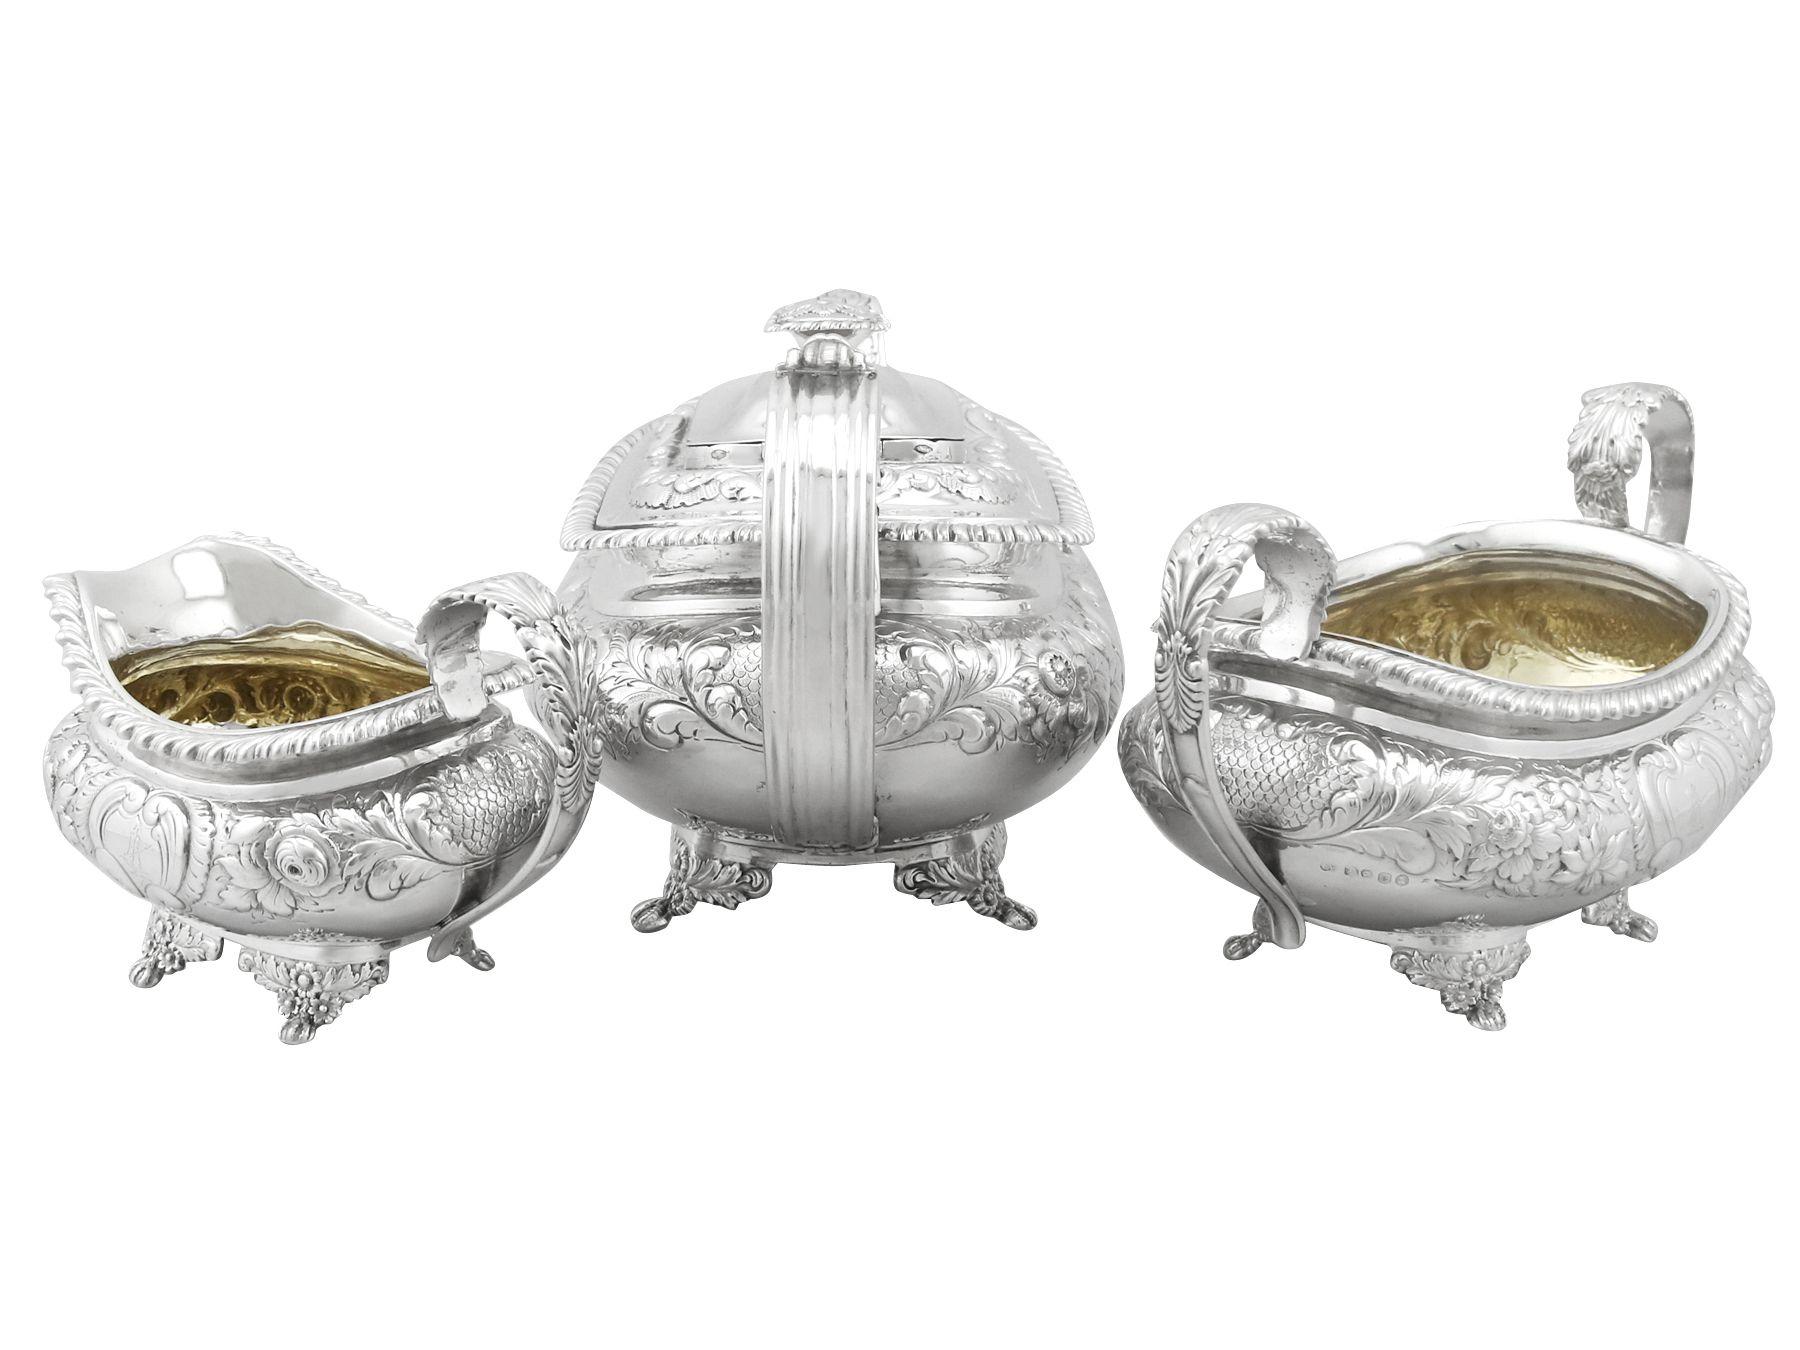 Eine außergewöhnliche, feine antike George IV Englisch Sterling Silber drei Stück Tee-Service / Set von Charles Thomas Fox gemacht; Teil unserer Silber Teegeschirr Sammlung

Dieses außergewöhnliche dreiteilige Teeservice aus antikem Sterlingsilber